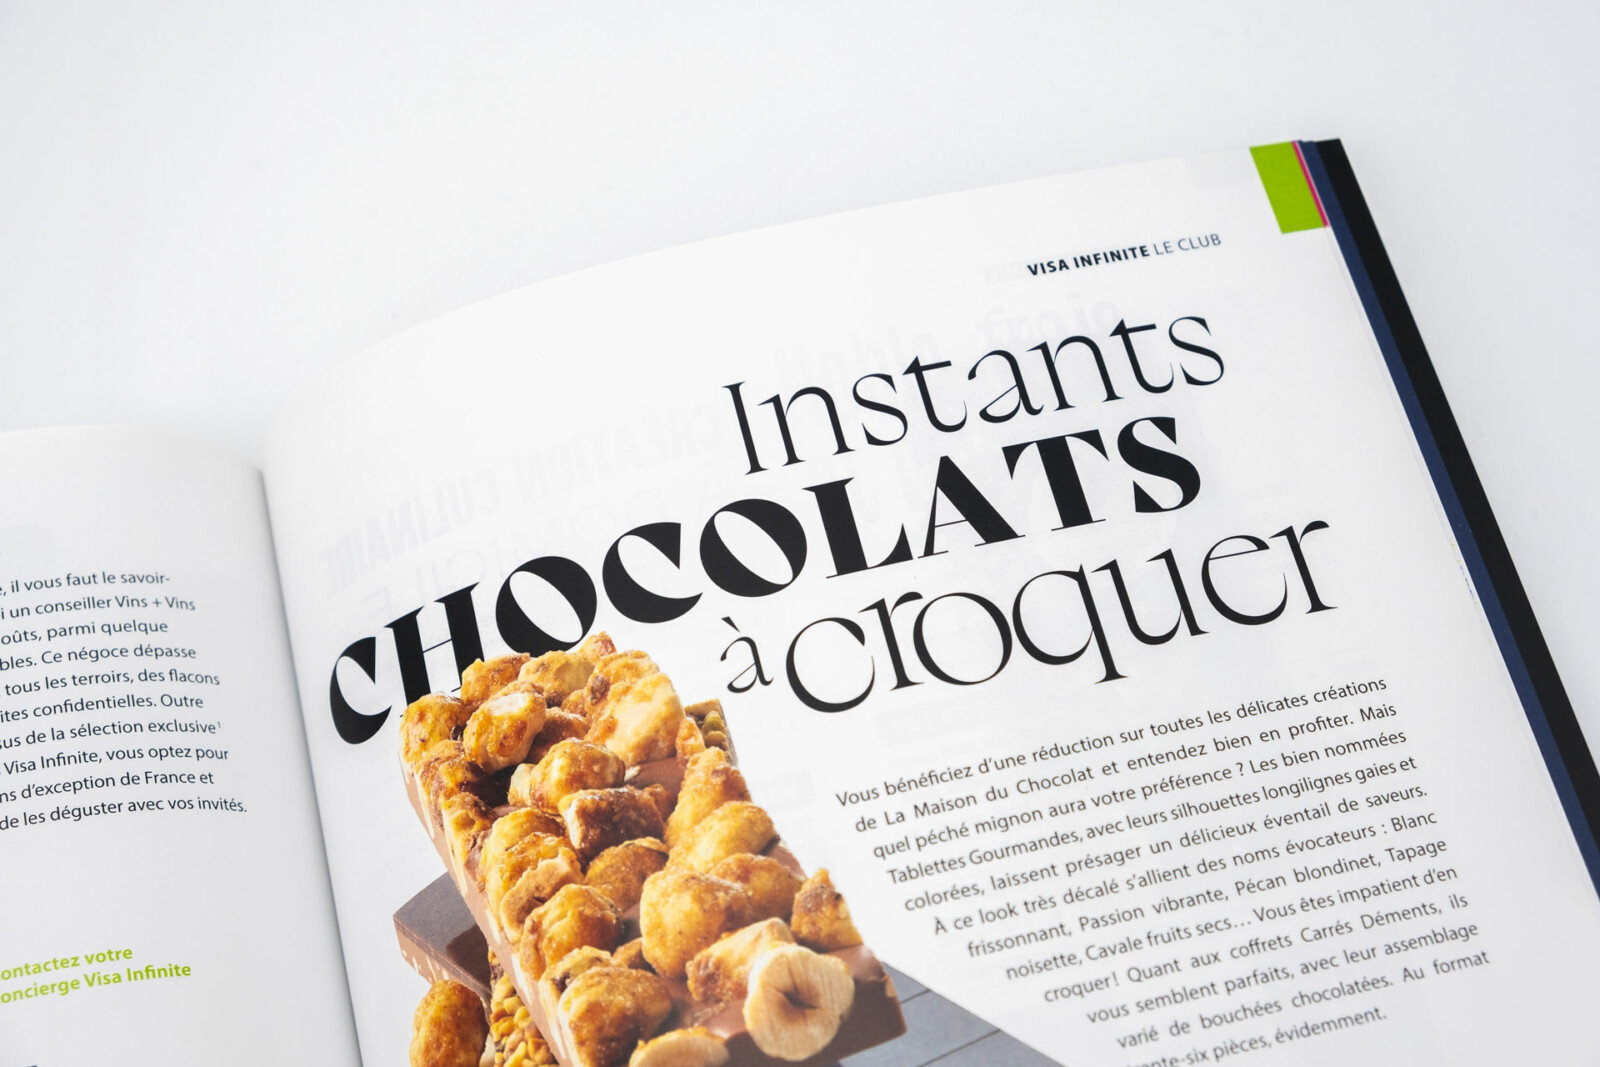 Gros plans sur le travail typographique réalisé pour le titre "Instant chocolat à croquer" pour le sujet consacré à l'enseigne "La Maison du Chocolat".